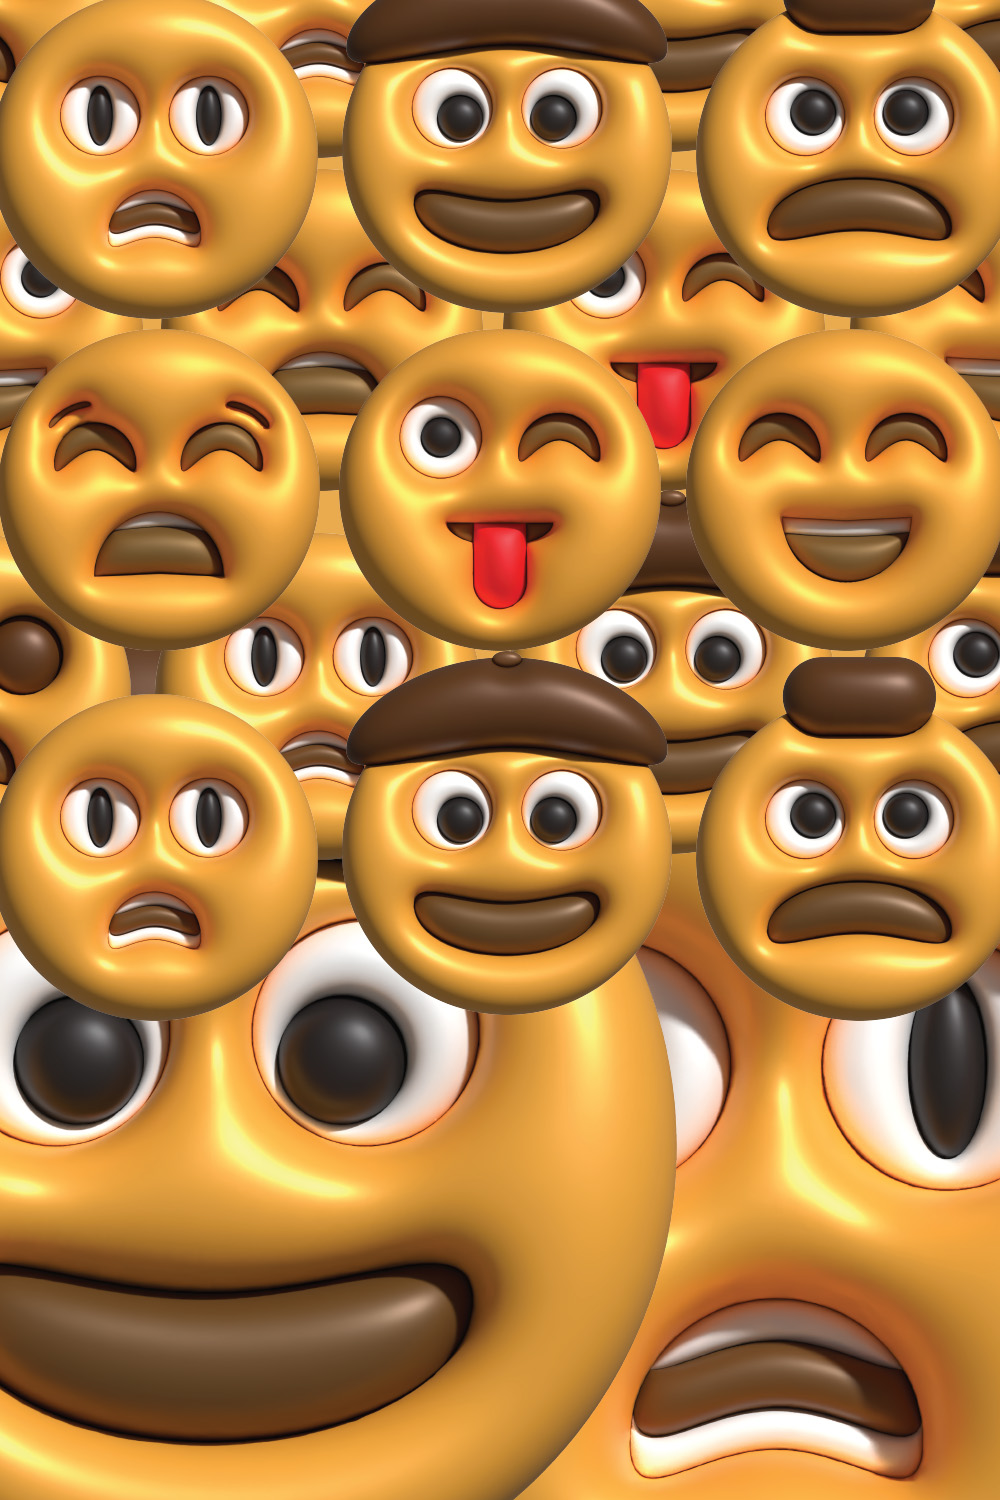 3D Emoticon Bundle pinterest preview image.